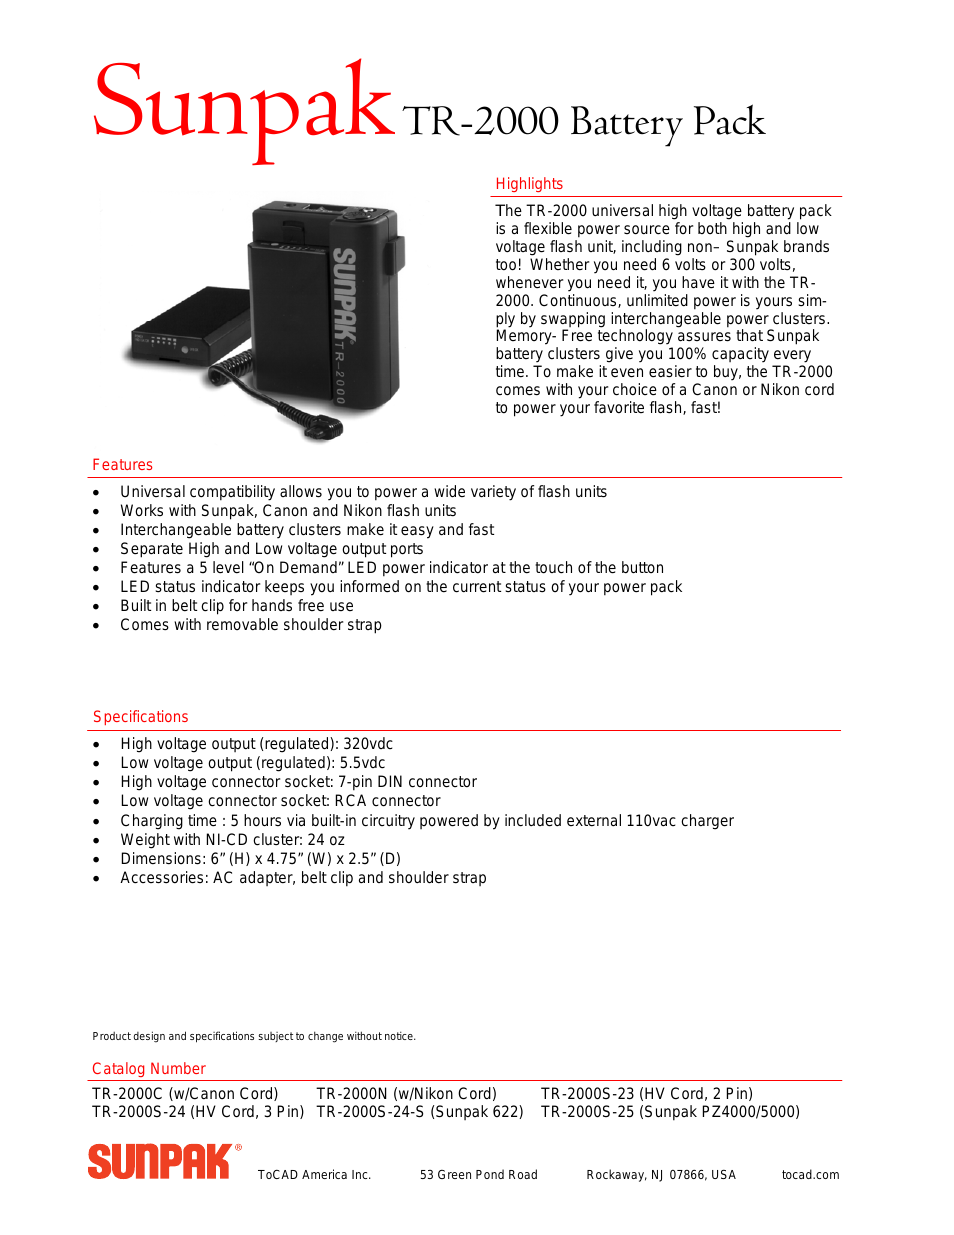 Sunpak Battery Pack TR-2000